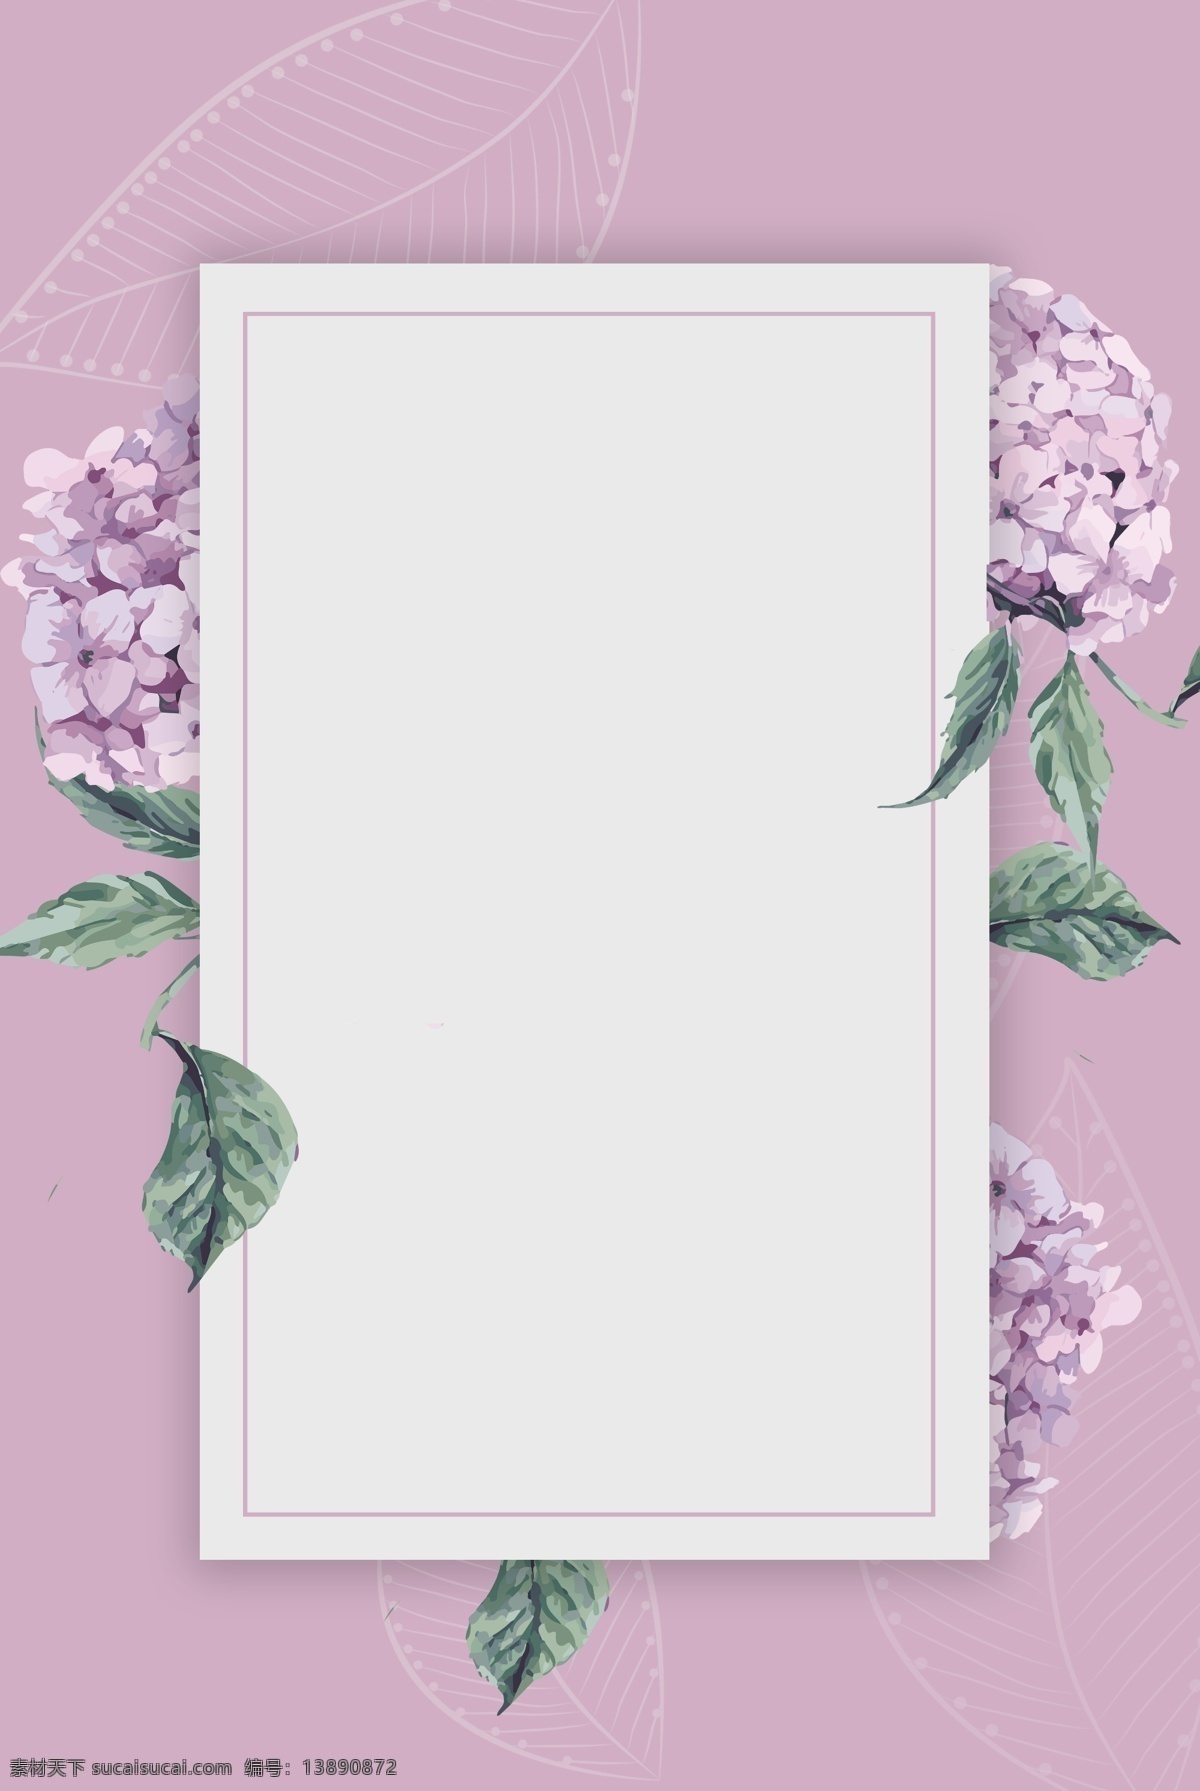 小 清新 花朵 紫色 简约 背景 海报 小清新 绿植花朵边框 绿植边框 绿植 清新花朵 小清新背景 花卉海报